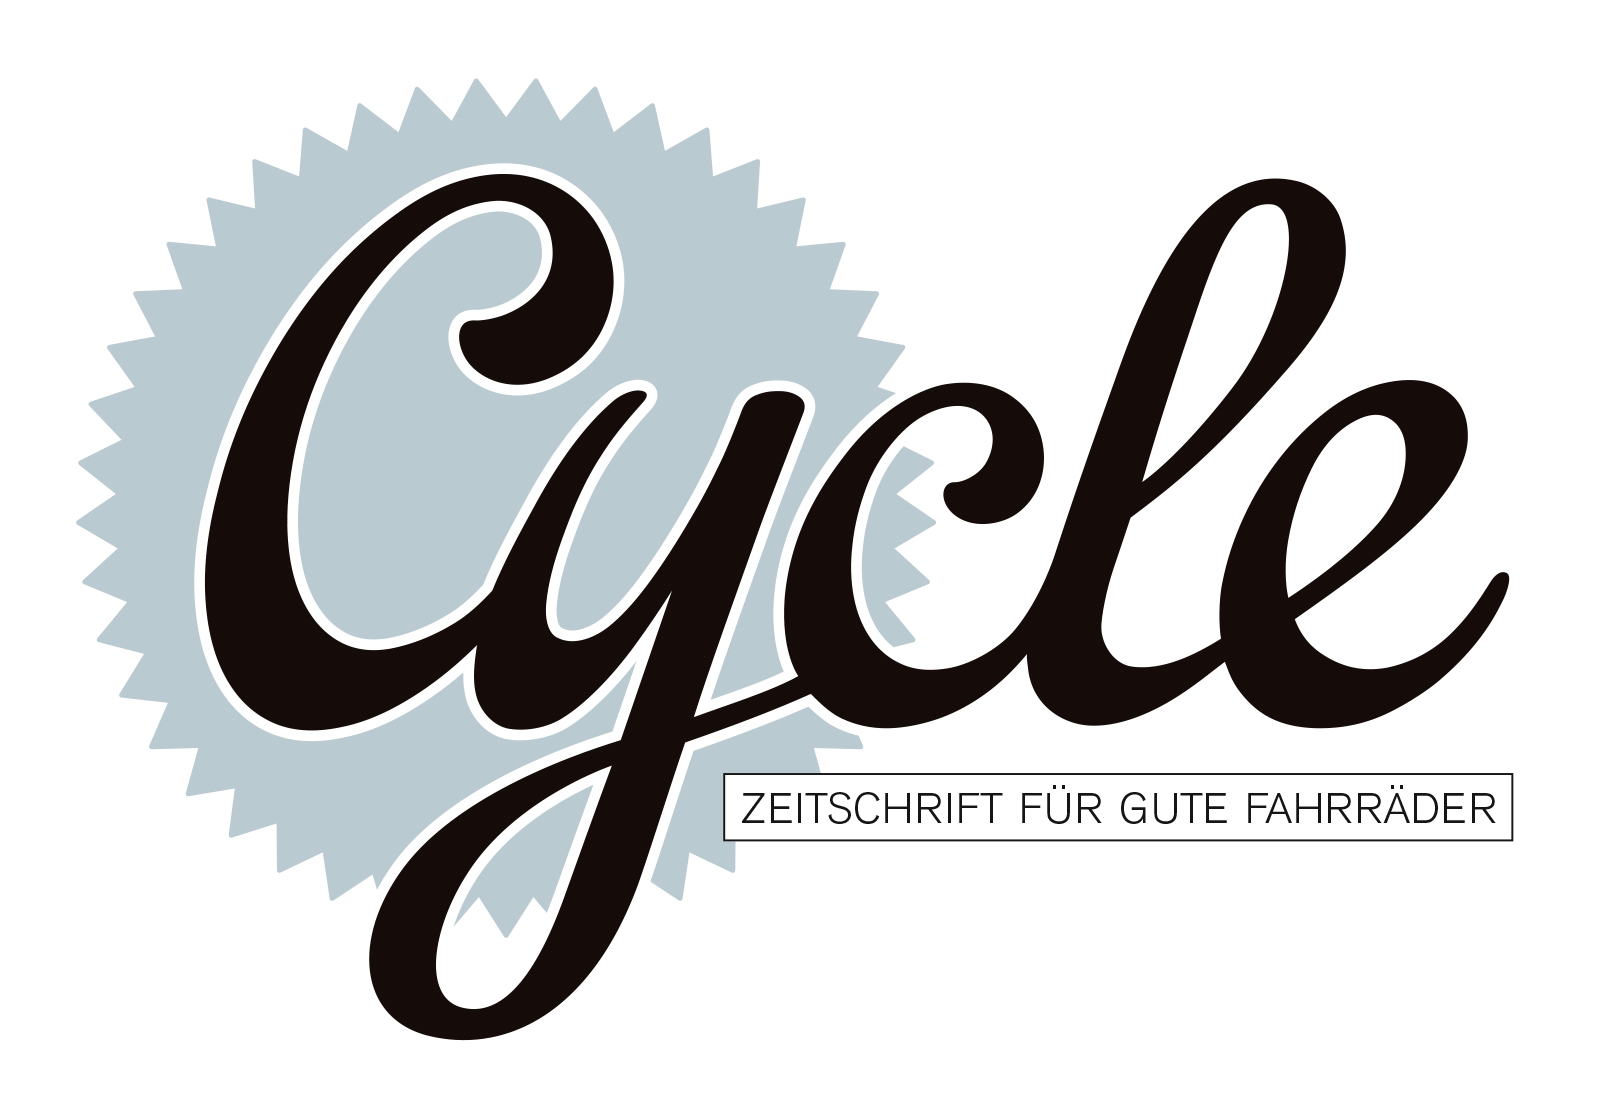 Cycle – Zeitschrift für gute Fahrräder